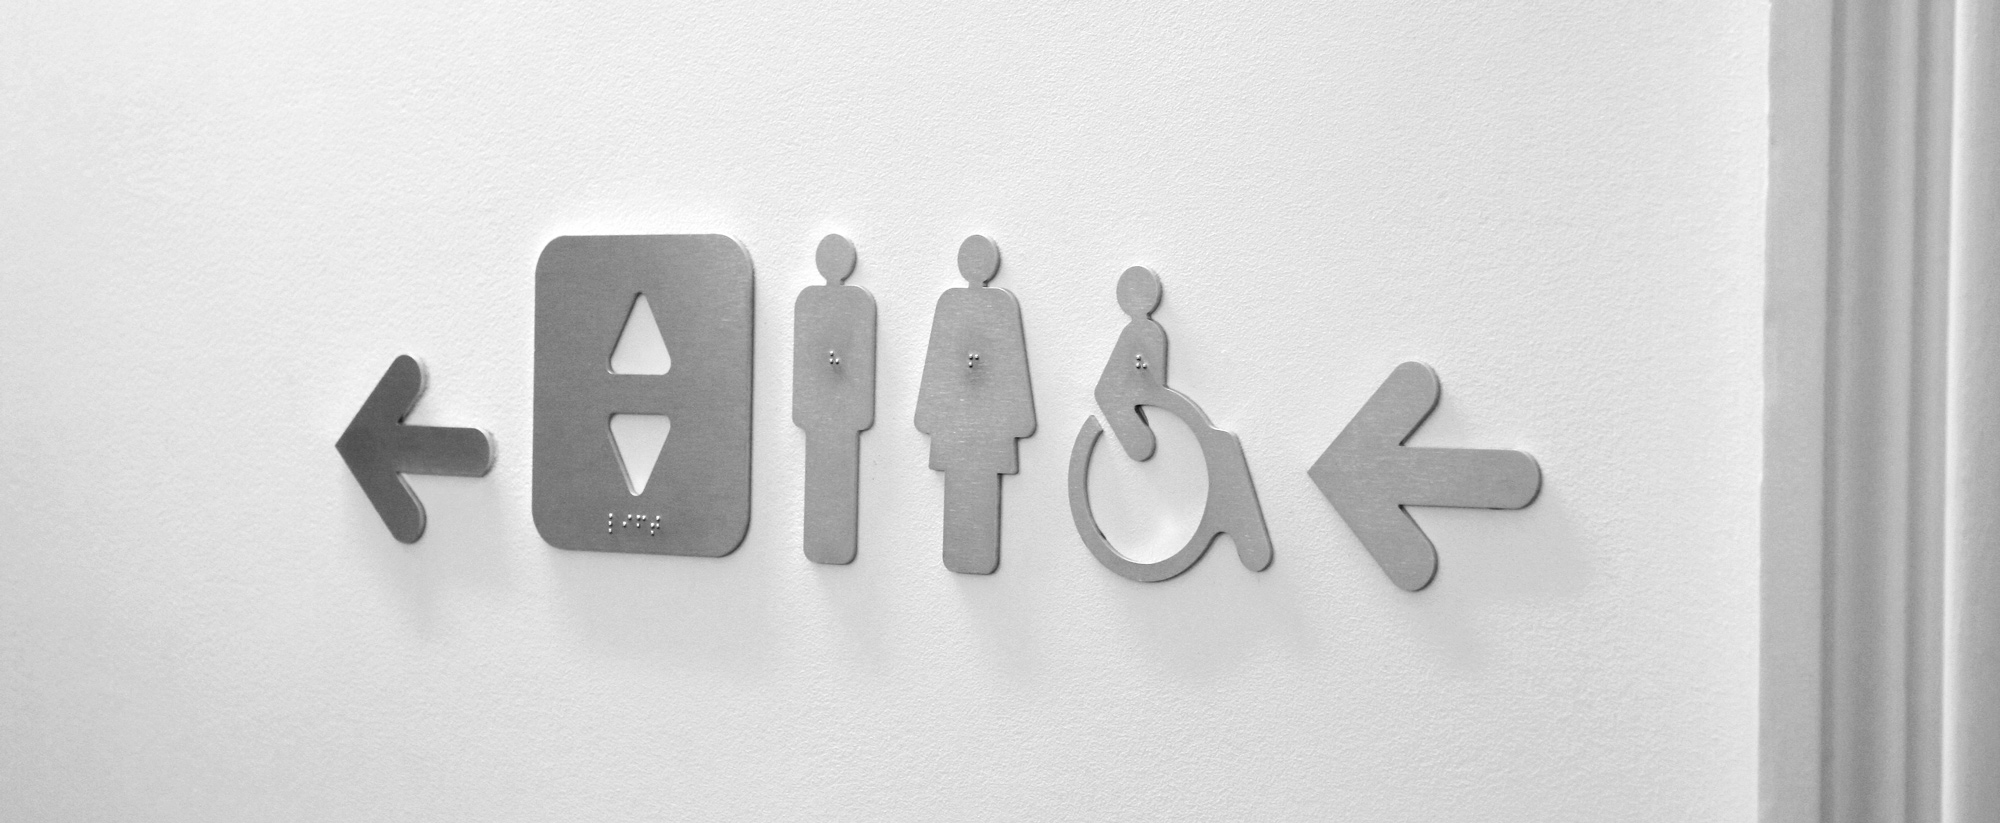 pictogrammes ascenseur, toilette homme femme et handicapé littera marcal en inox brossé